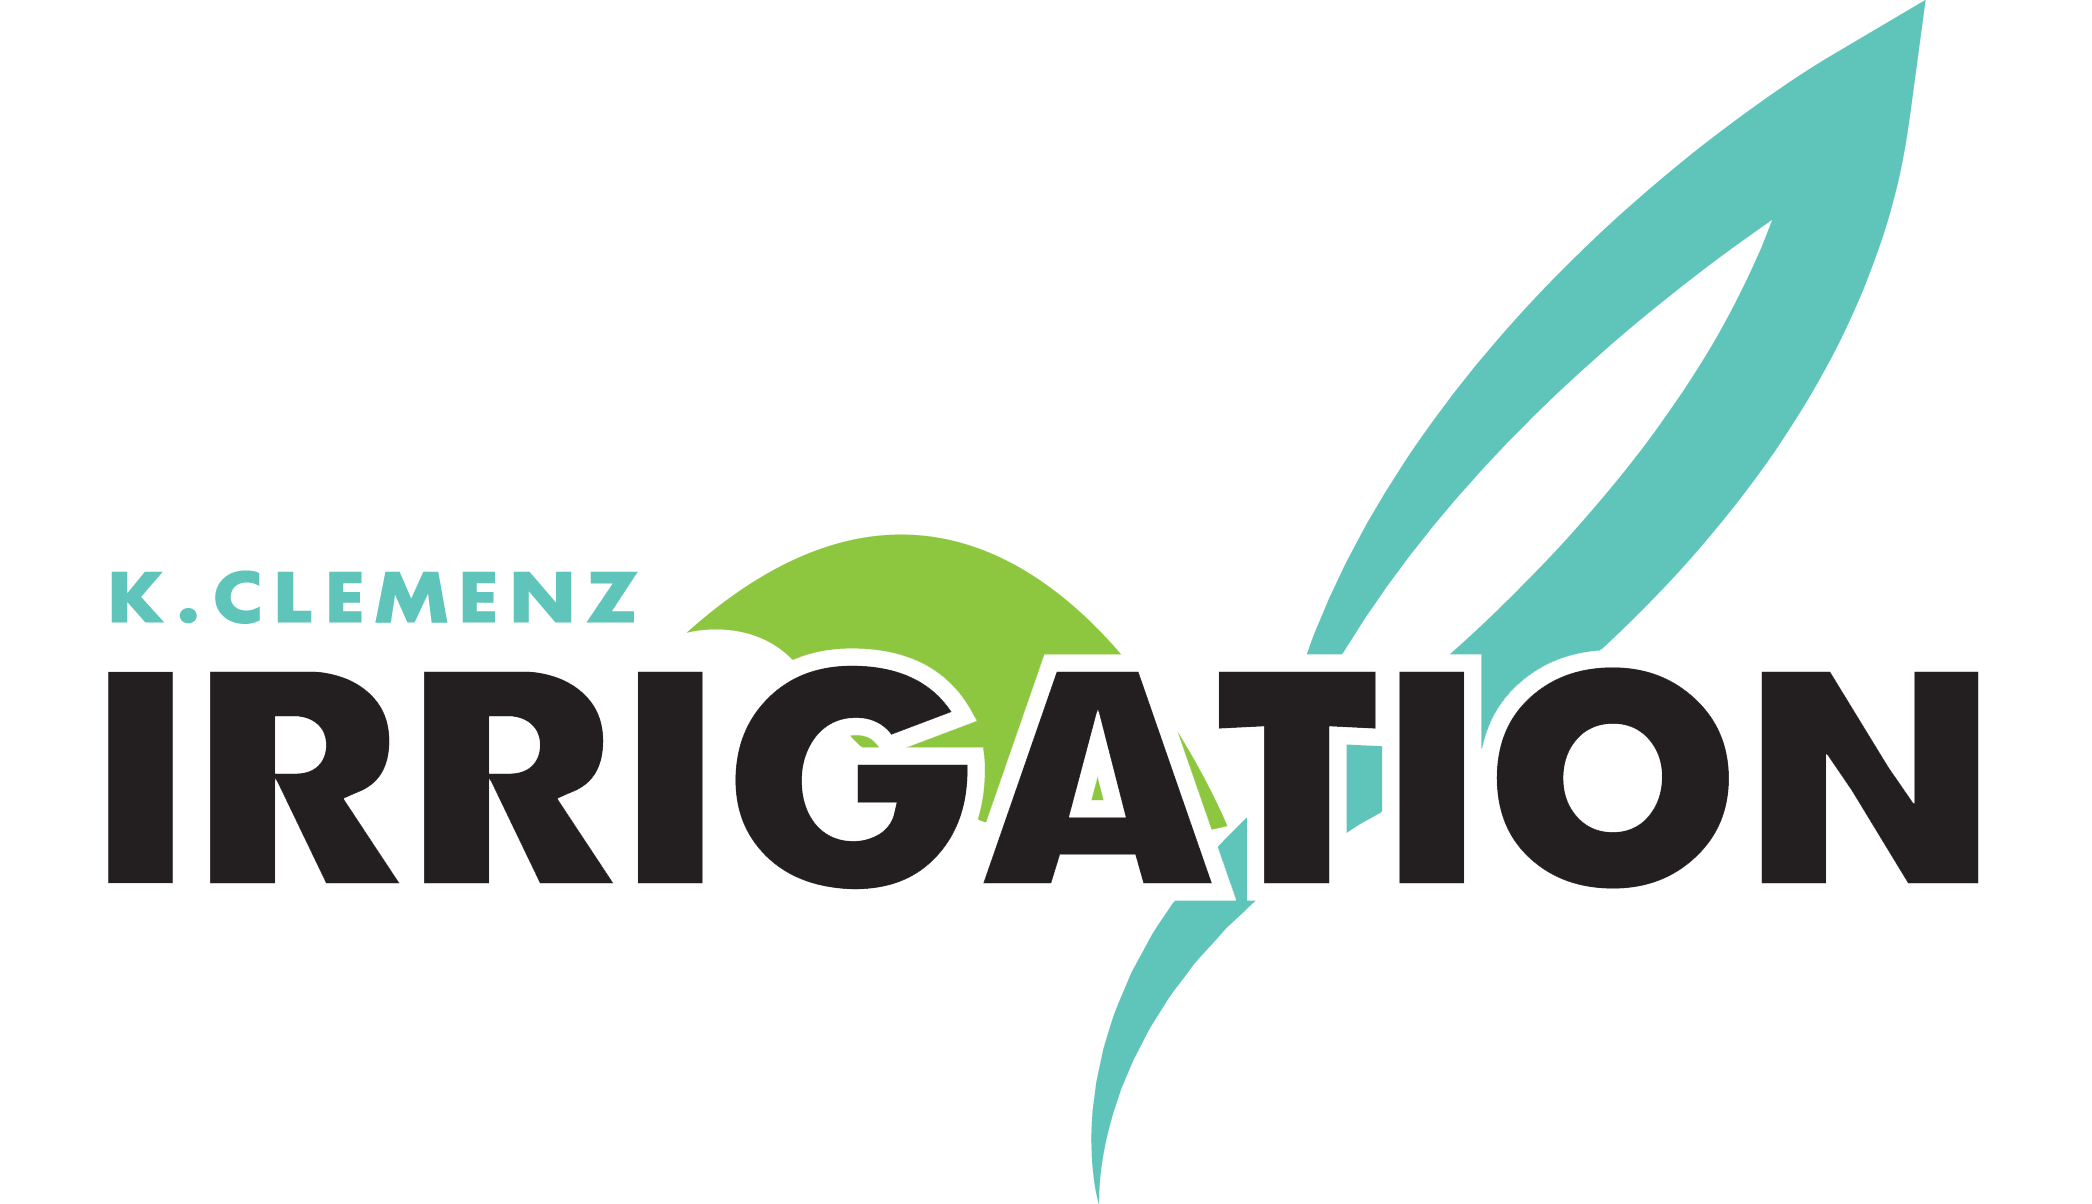 K. Clemenz Irrigation